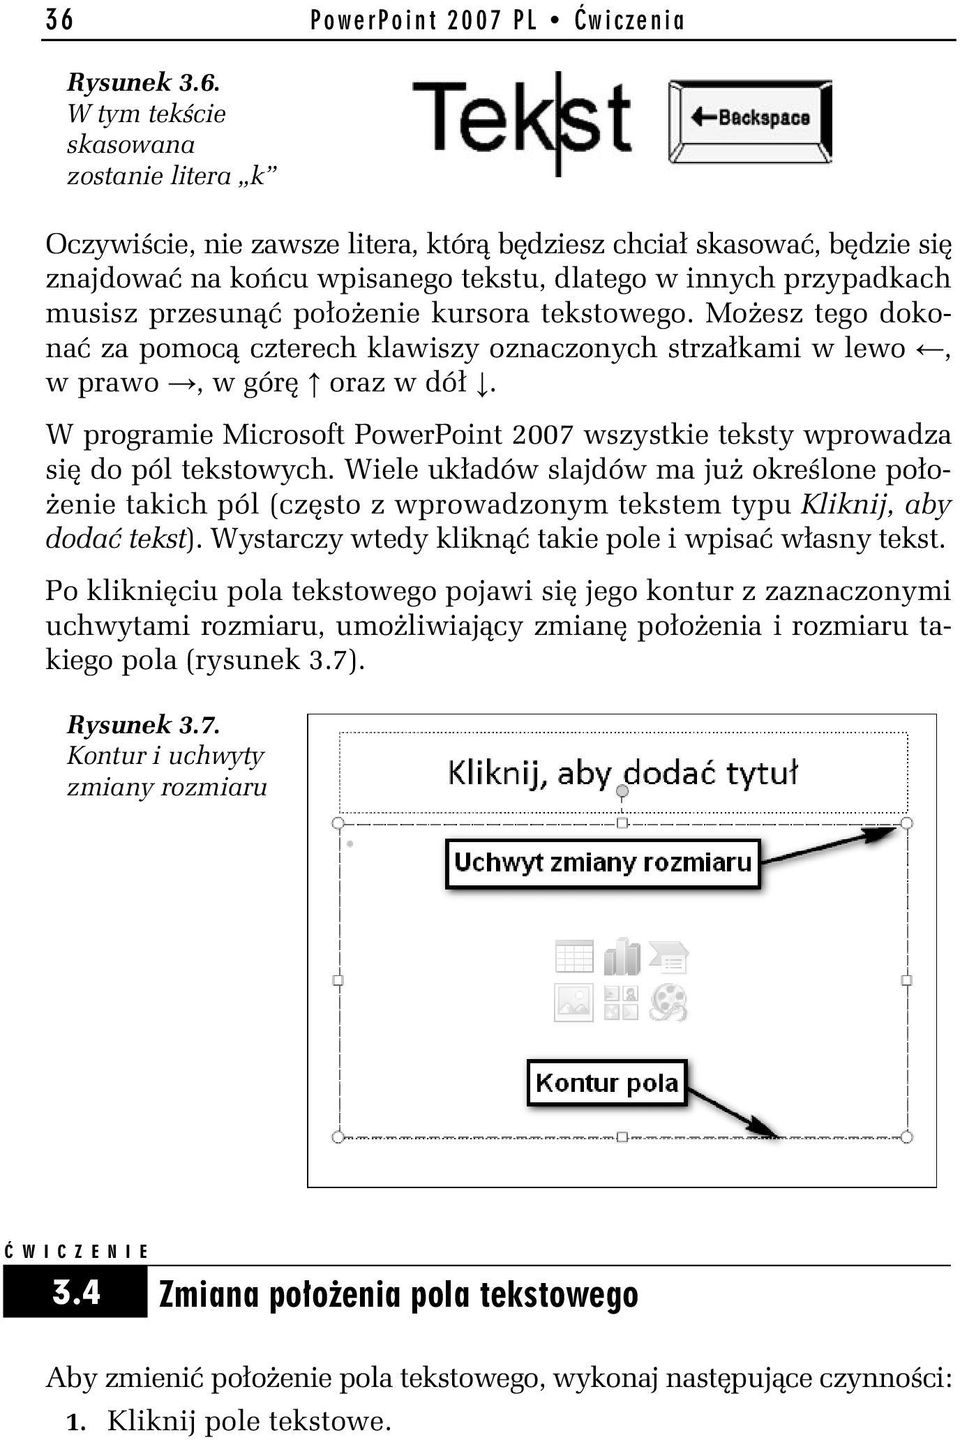 W programie Microsoft PowerPoint 2007 wszystkie teksty wprowadza się do pól tekstowych.